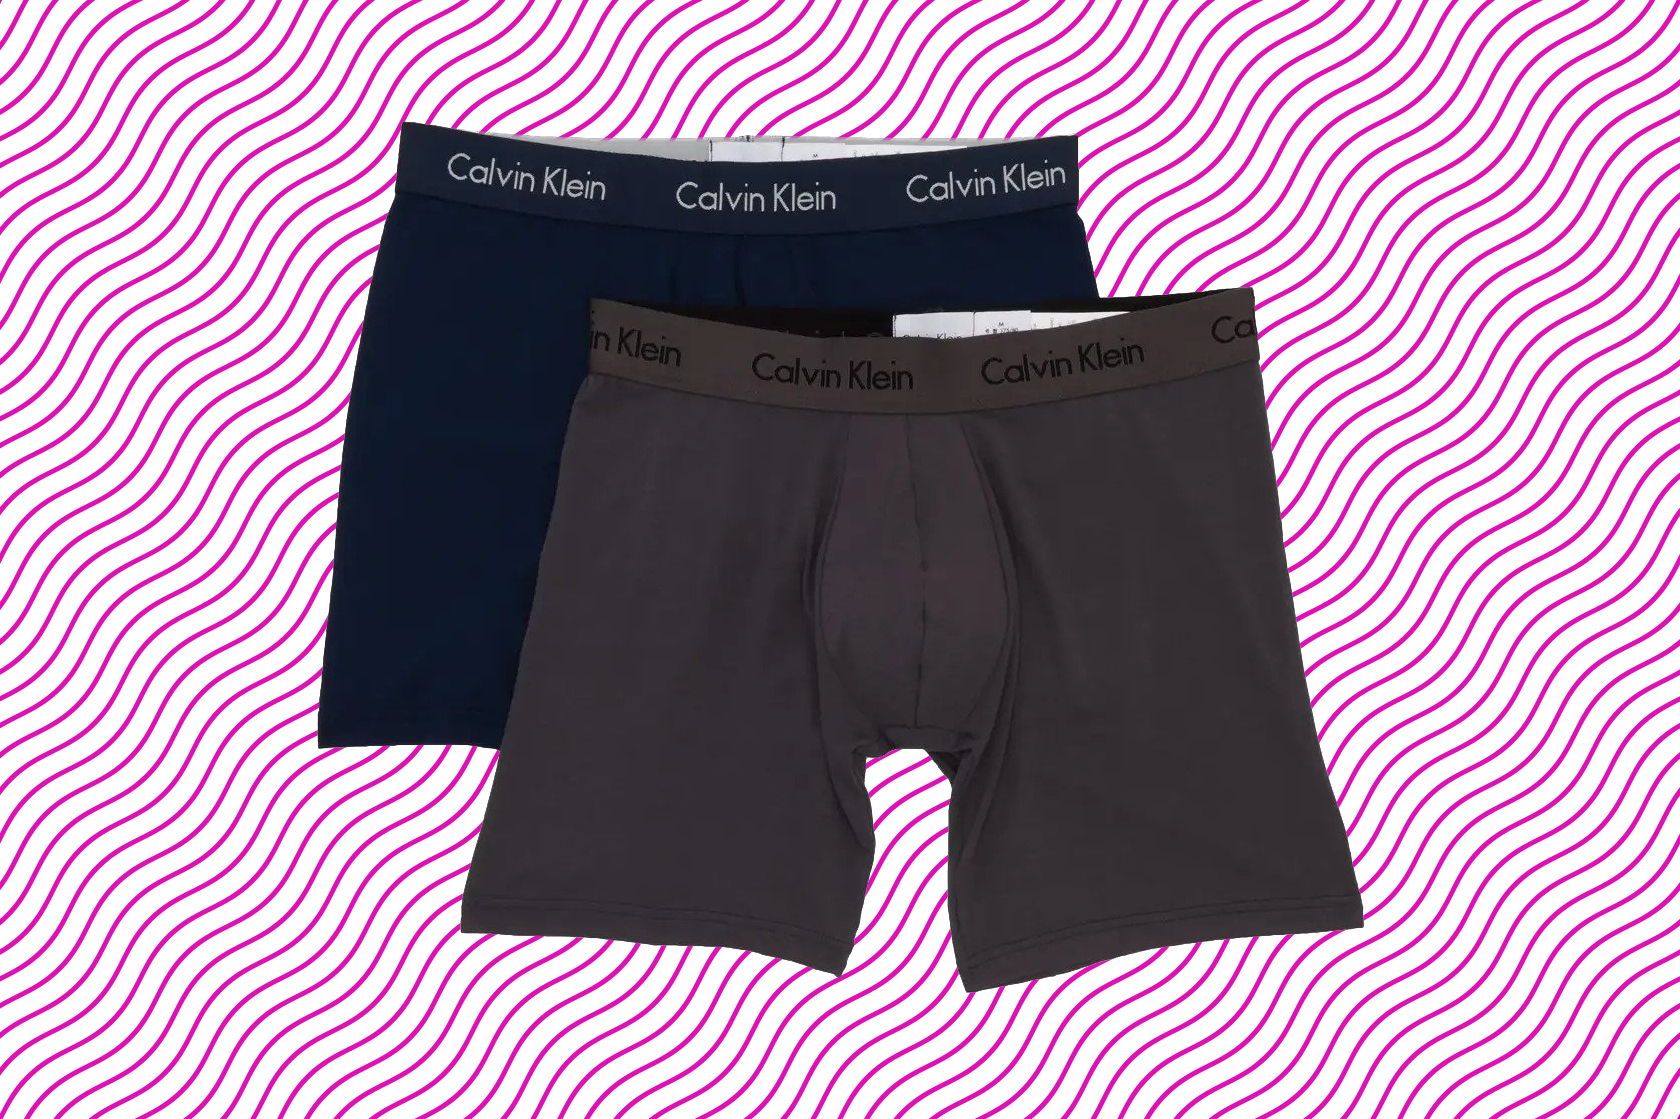 Calvin Klein modal underwear is on sale at Nordstrom Rack